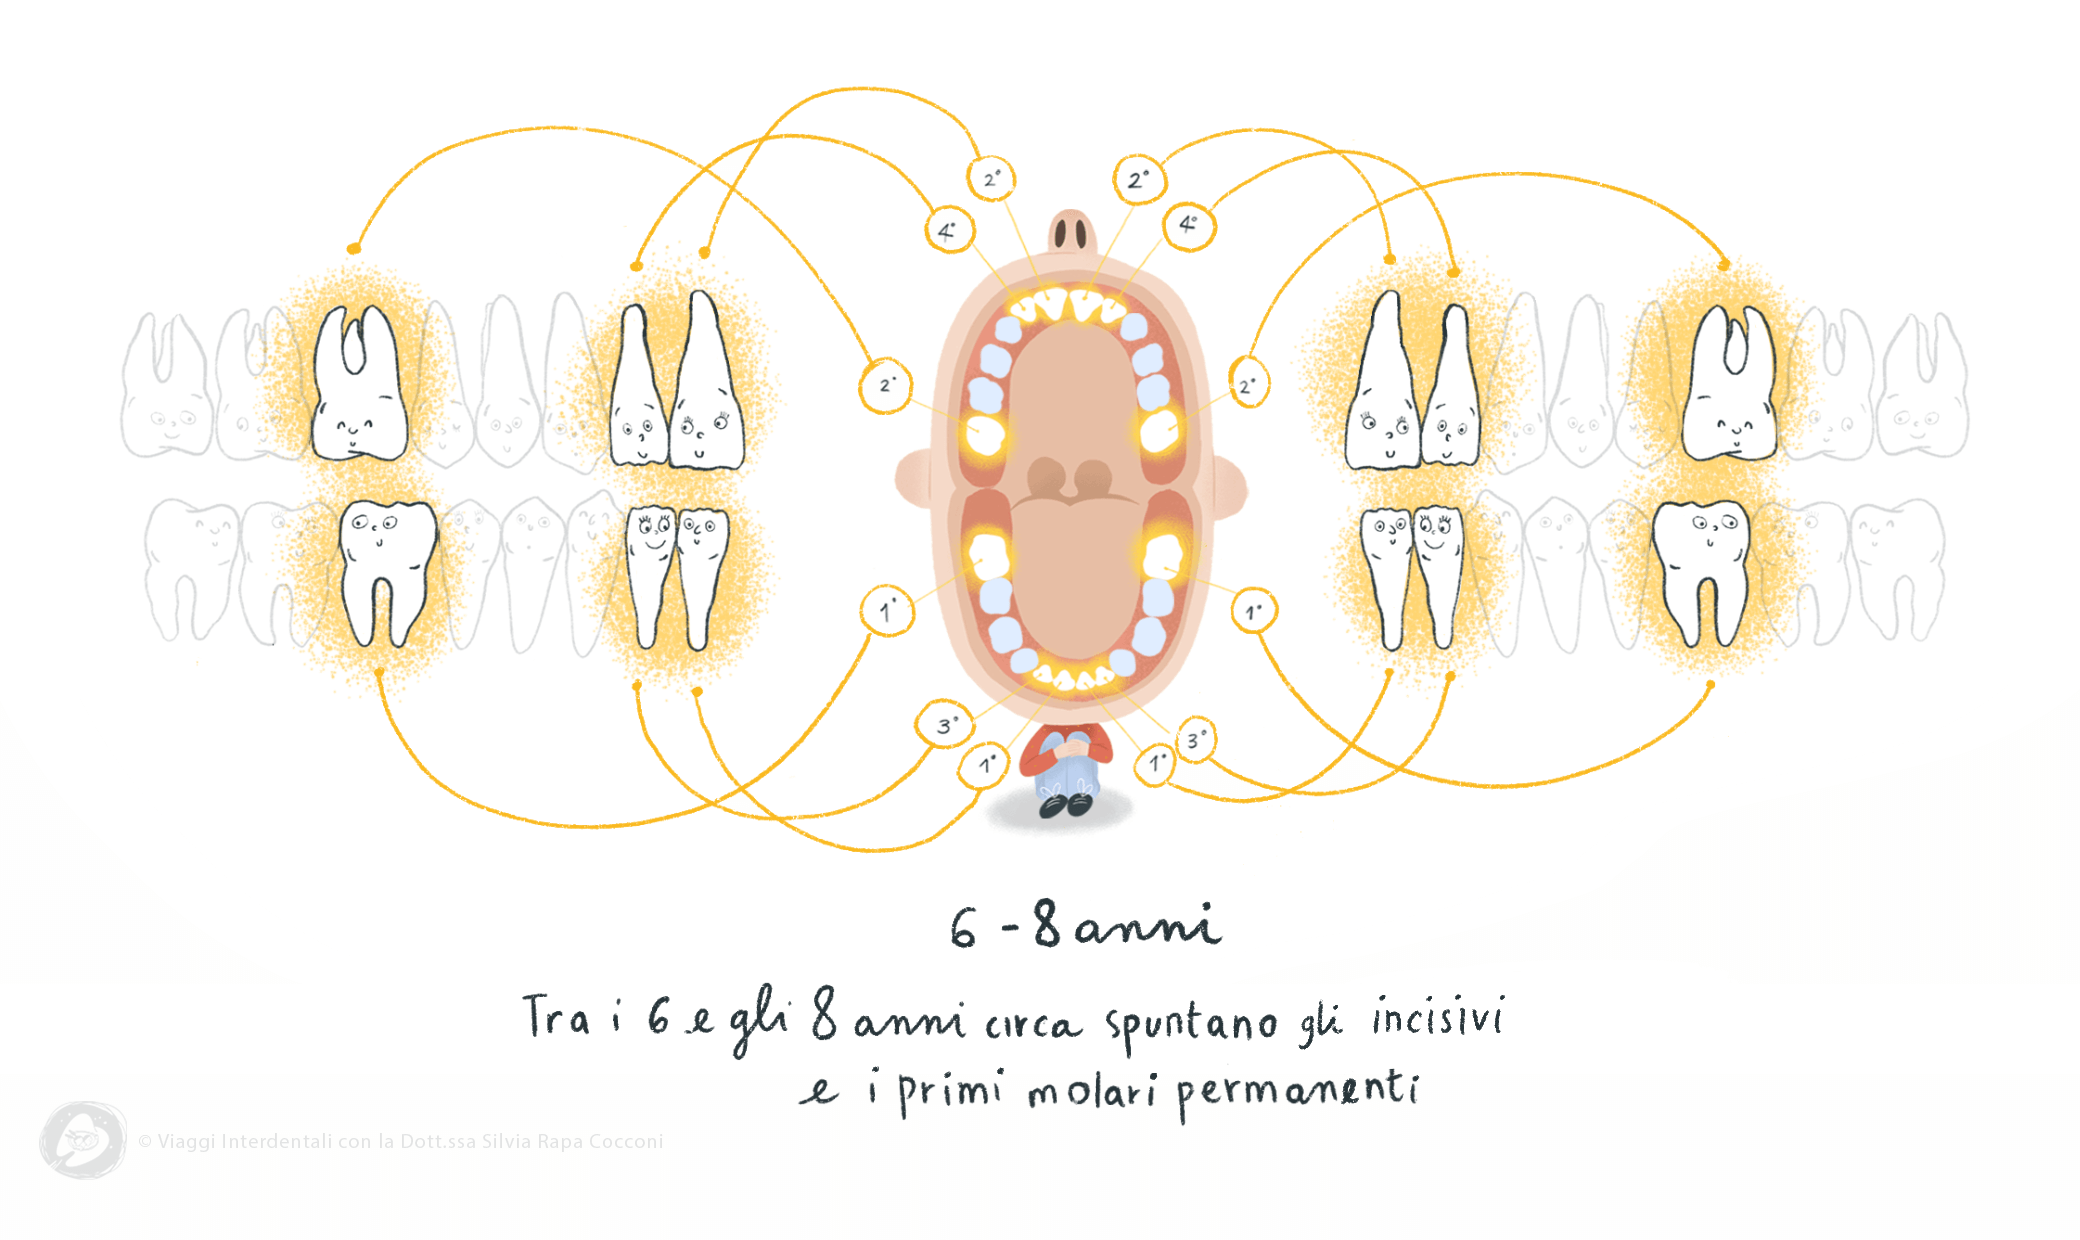 La permuta dei denti: tra i 6 e 8 anni spuntano gli incisivi e i primi molari permanenti - Viaggi Interdentali